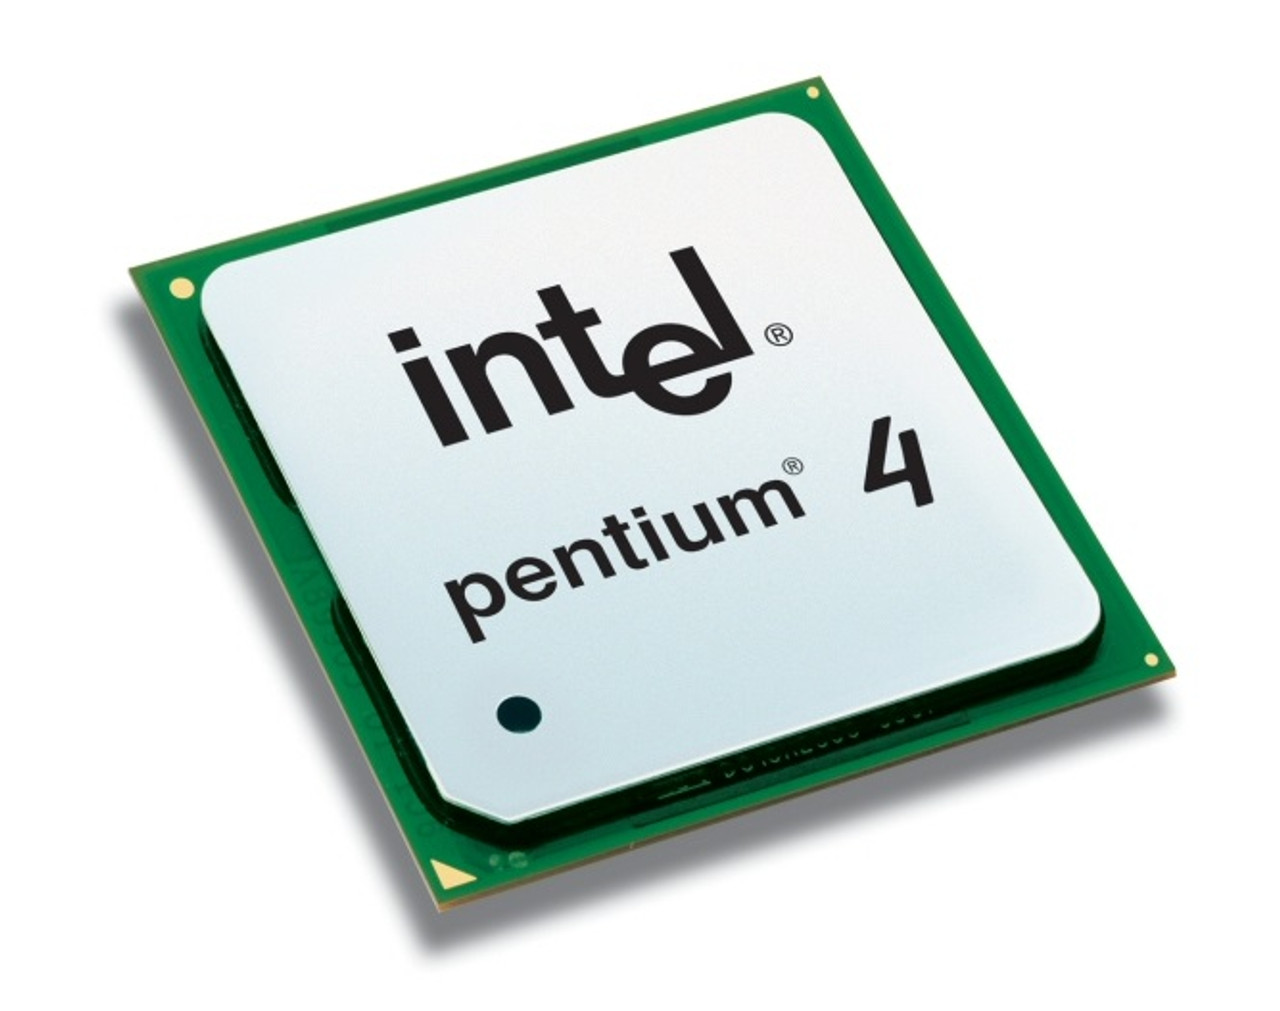 519K - Intel Pentium 4 519K 3.06GHz 533MHz FSB 1MB L2 Cache Processor